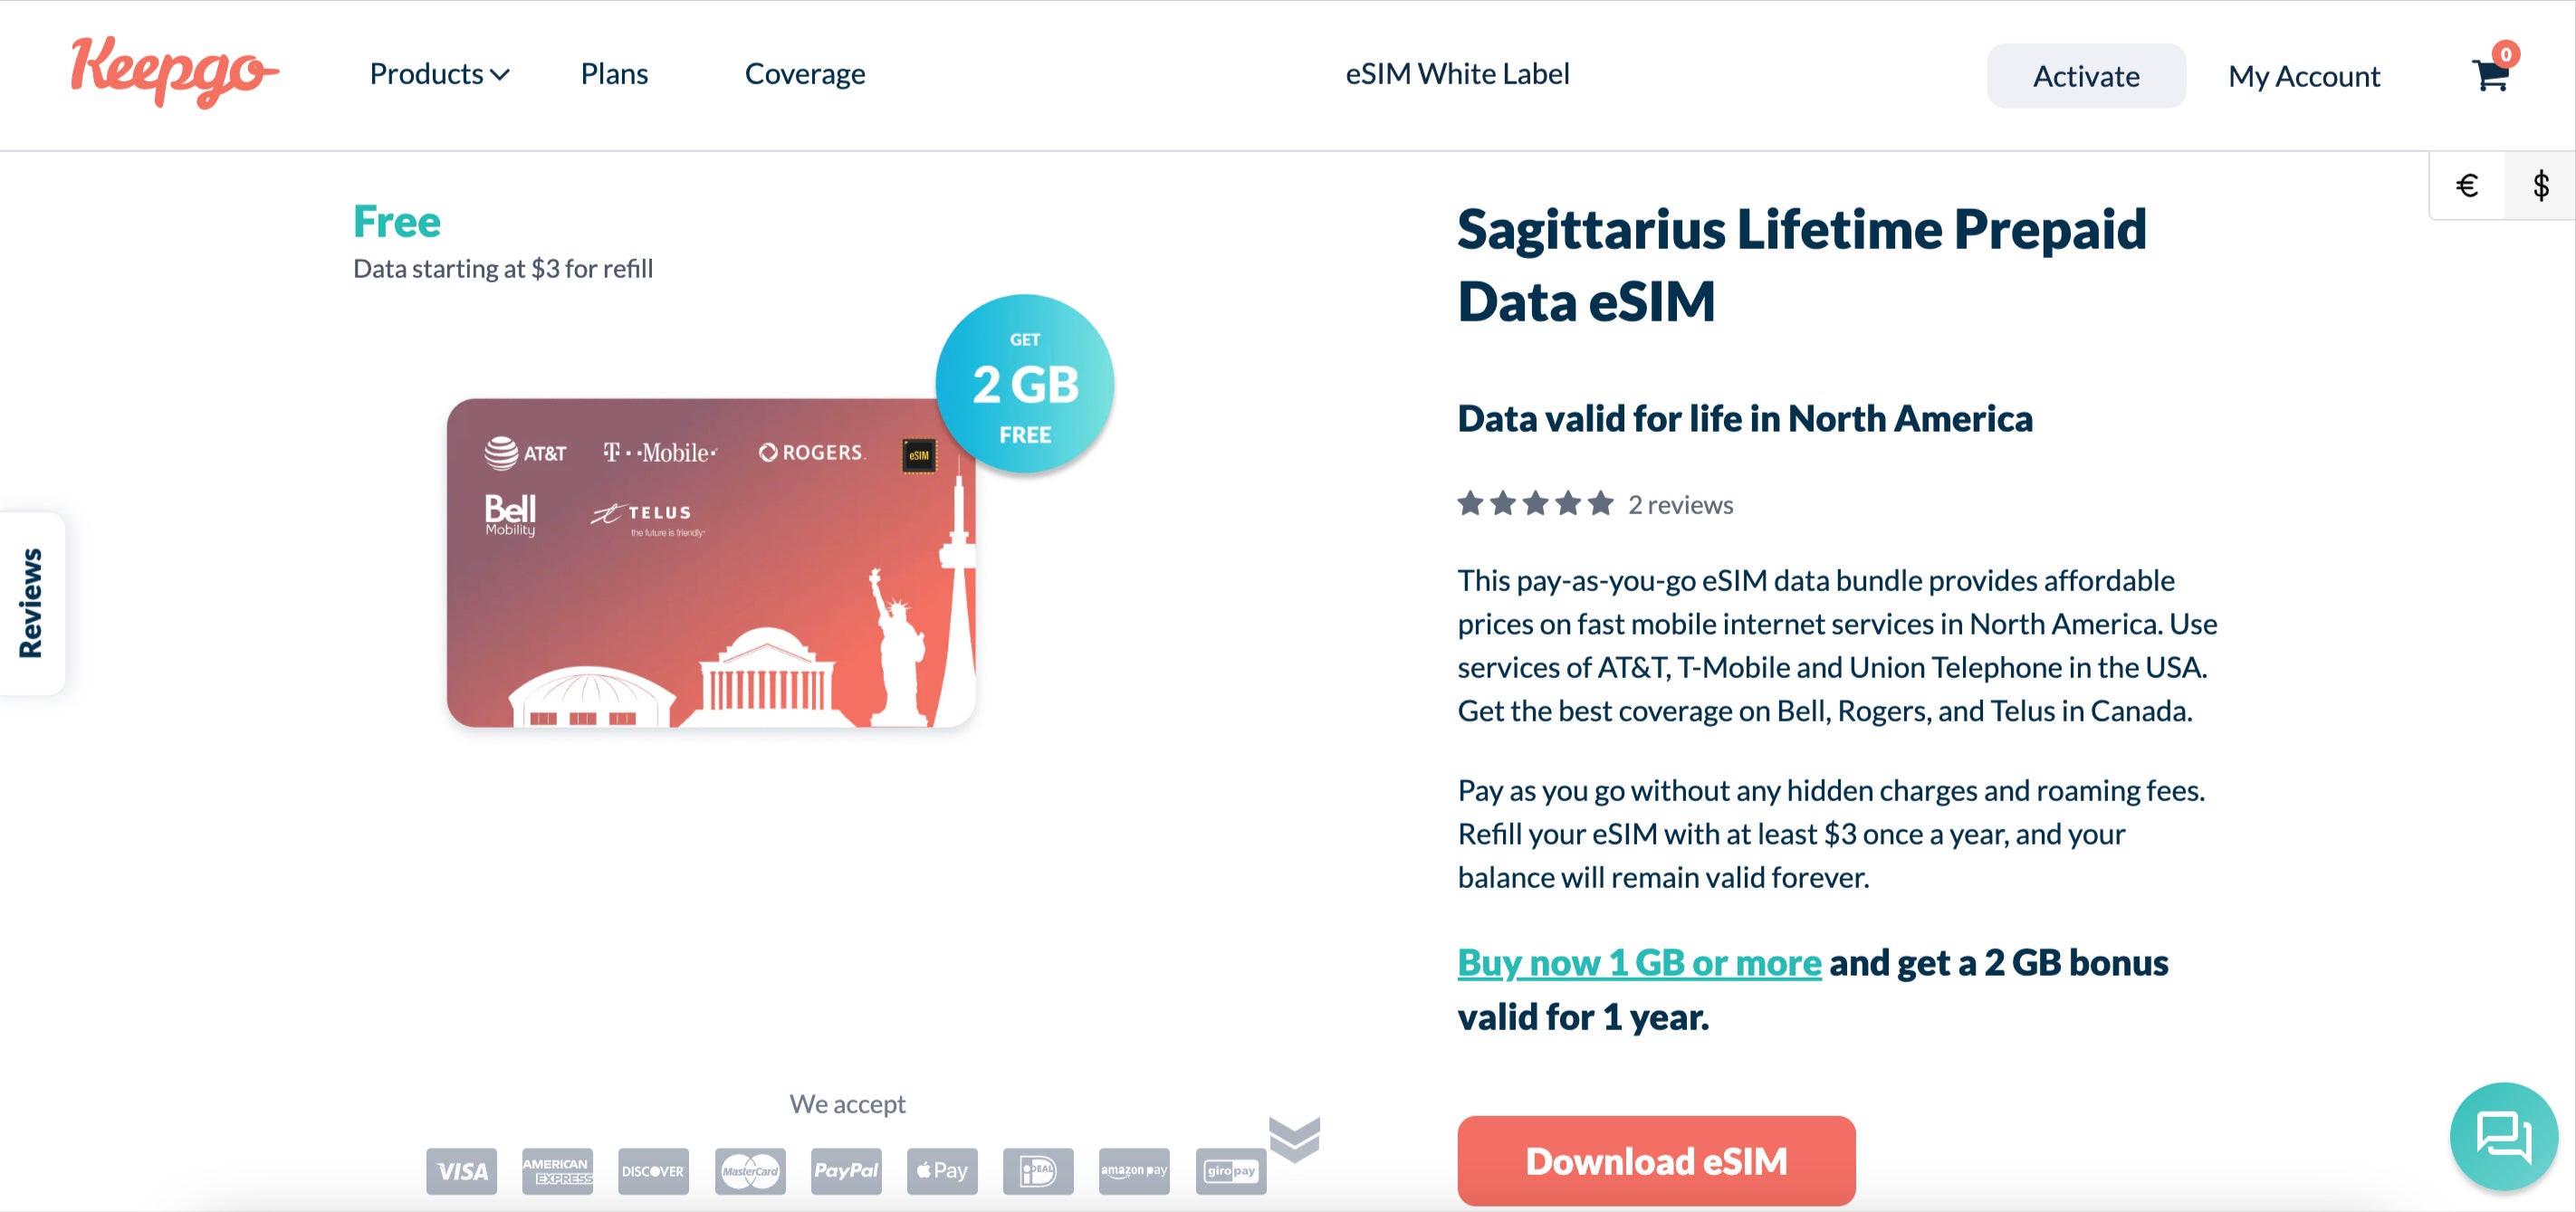 Sagittarius Lifetime Prepaid Data eSIM